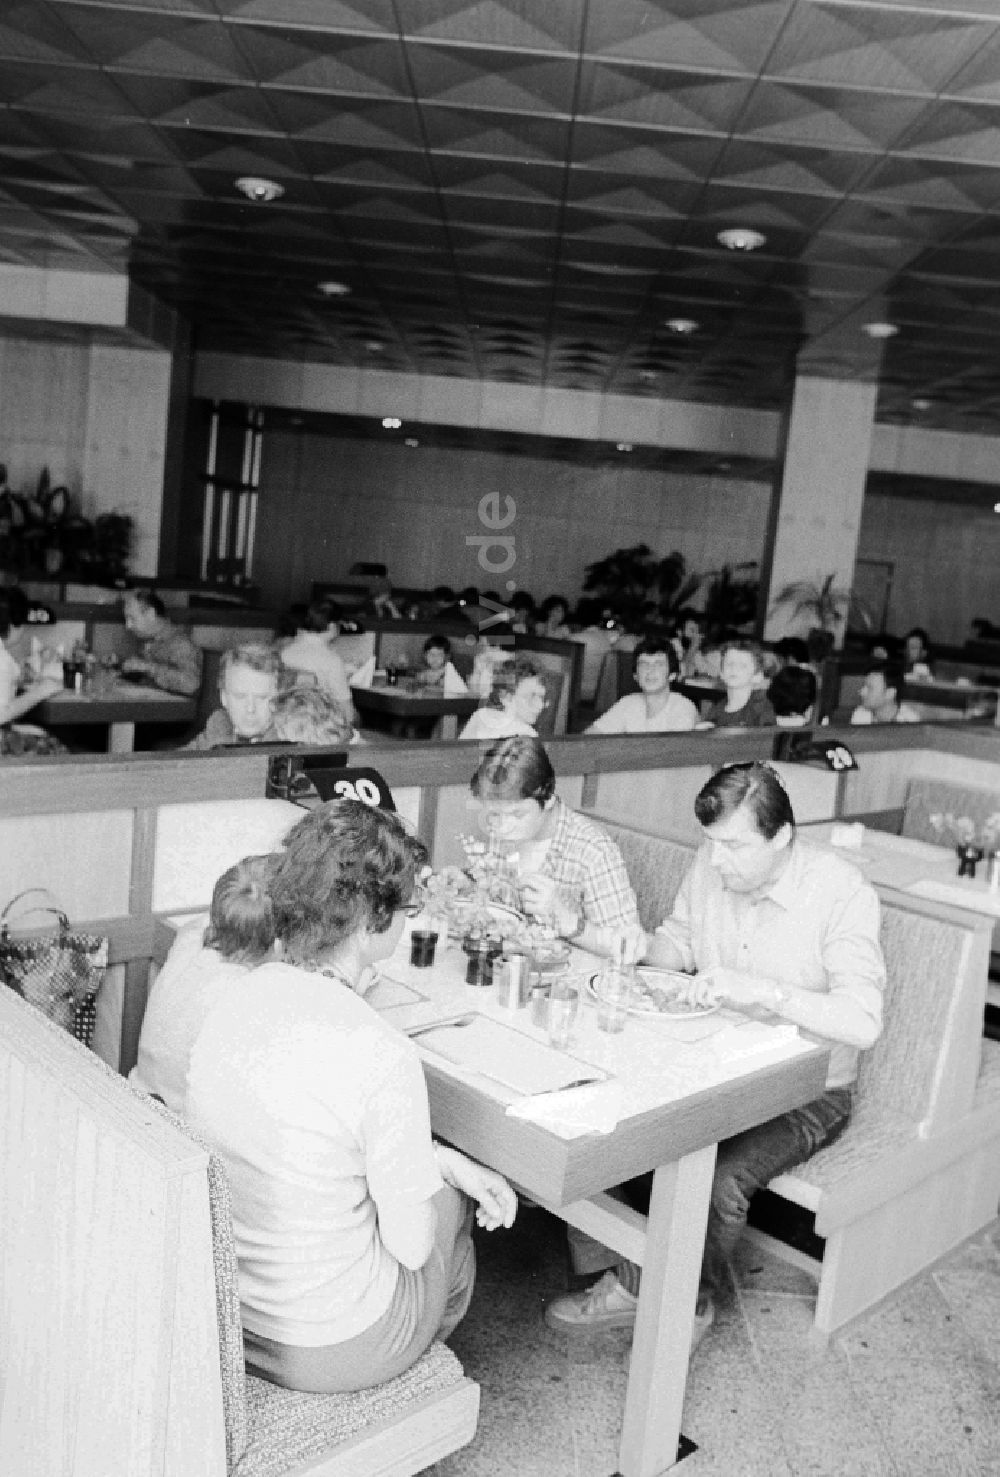 Schönefeld: Reisende im Restaurant im Bahnhof Flughafen Berlin-Schönefeld in Schönefeld in Brandenburg in der DDR